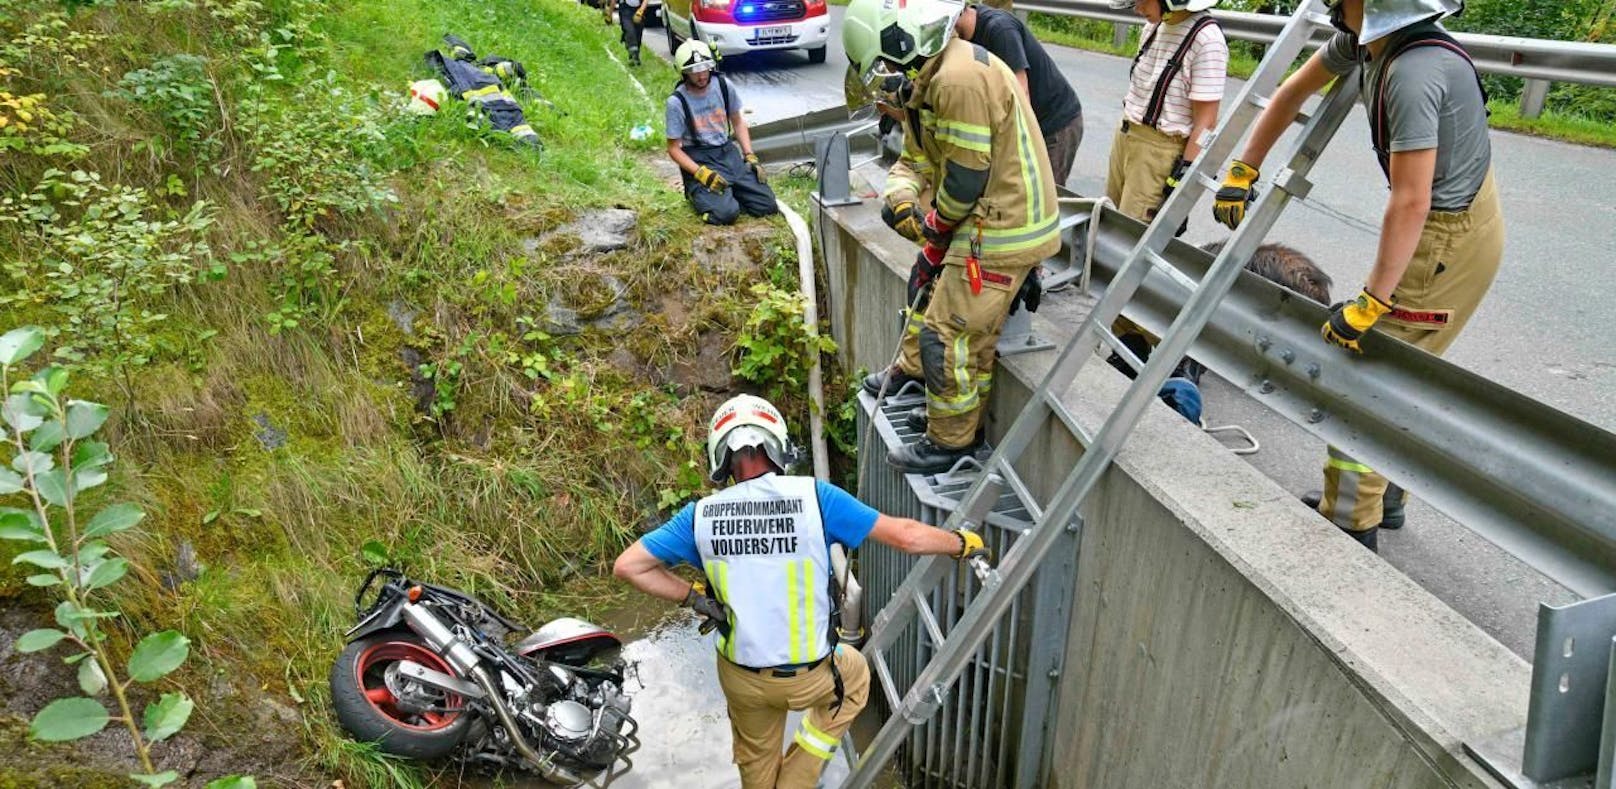 Biker in Wasserbecken gestürzt, Radler rettet ihn